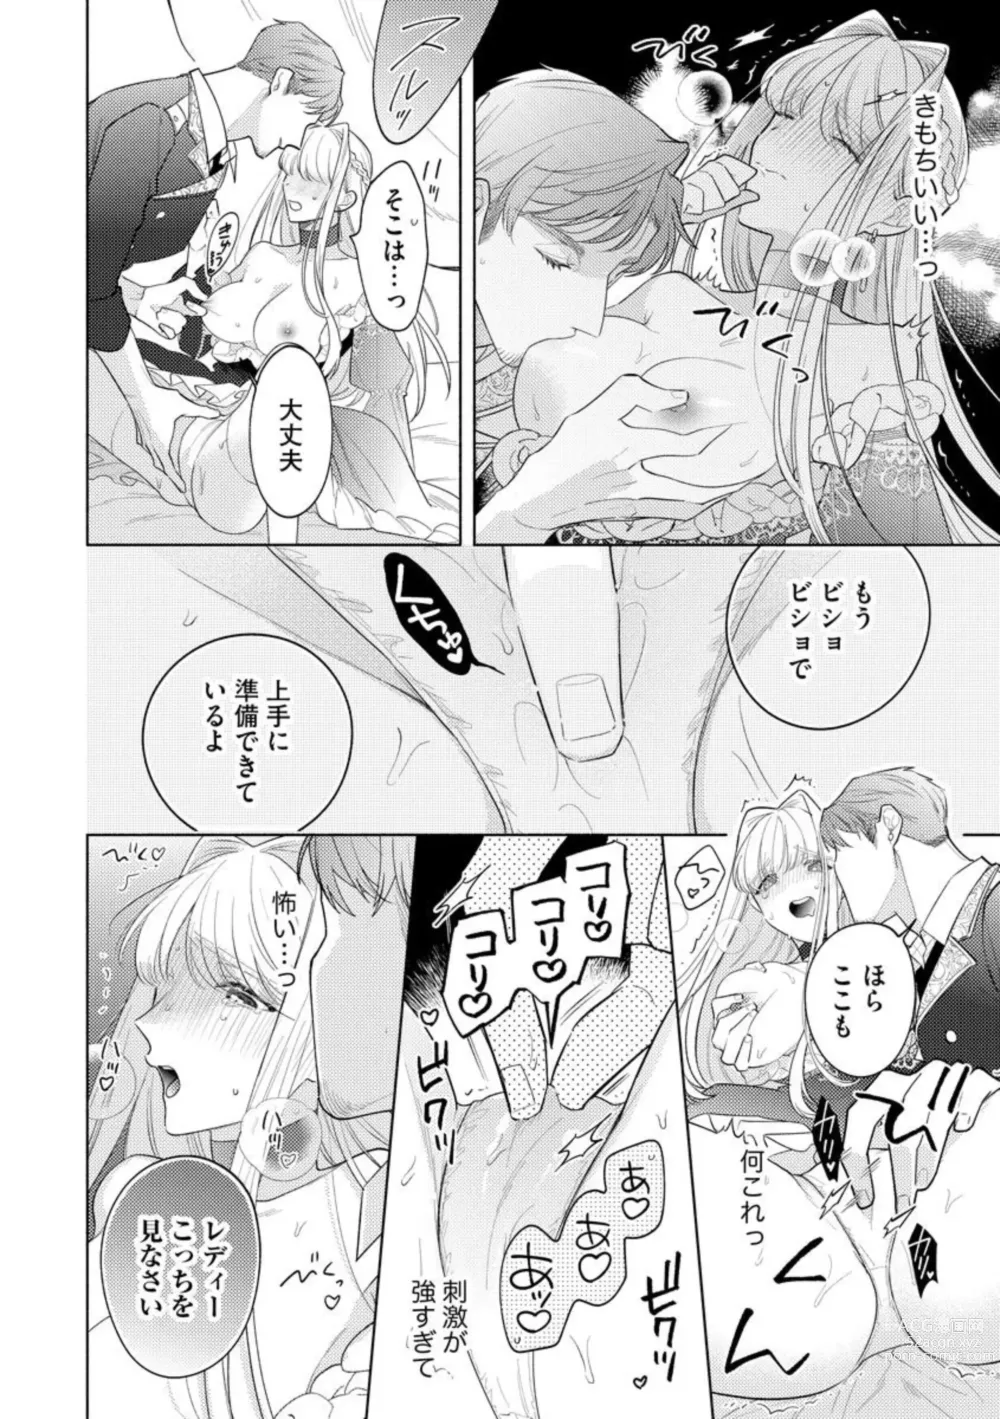 Page 24 of manga Haikei Ojisama-ō Otōto Denka, ichiya Kagiri no Hazu ga Konyaku no Mōshikomi wa Sōteigaidesu!